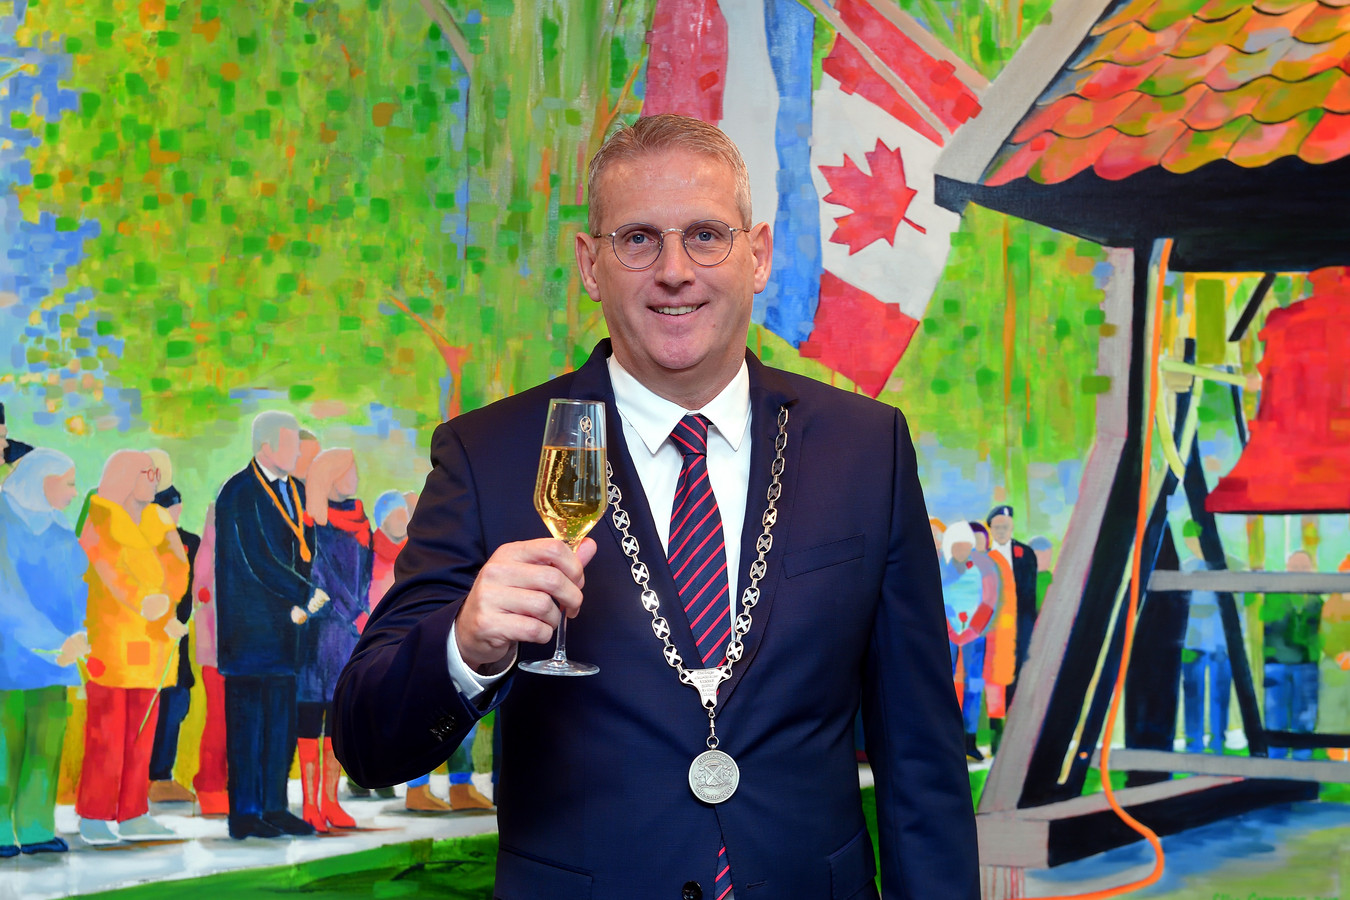 De gemeenteraad heeft burgemeester Ruud van den Belt aanbevolen voor een tweede termijn burgervaderschap.